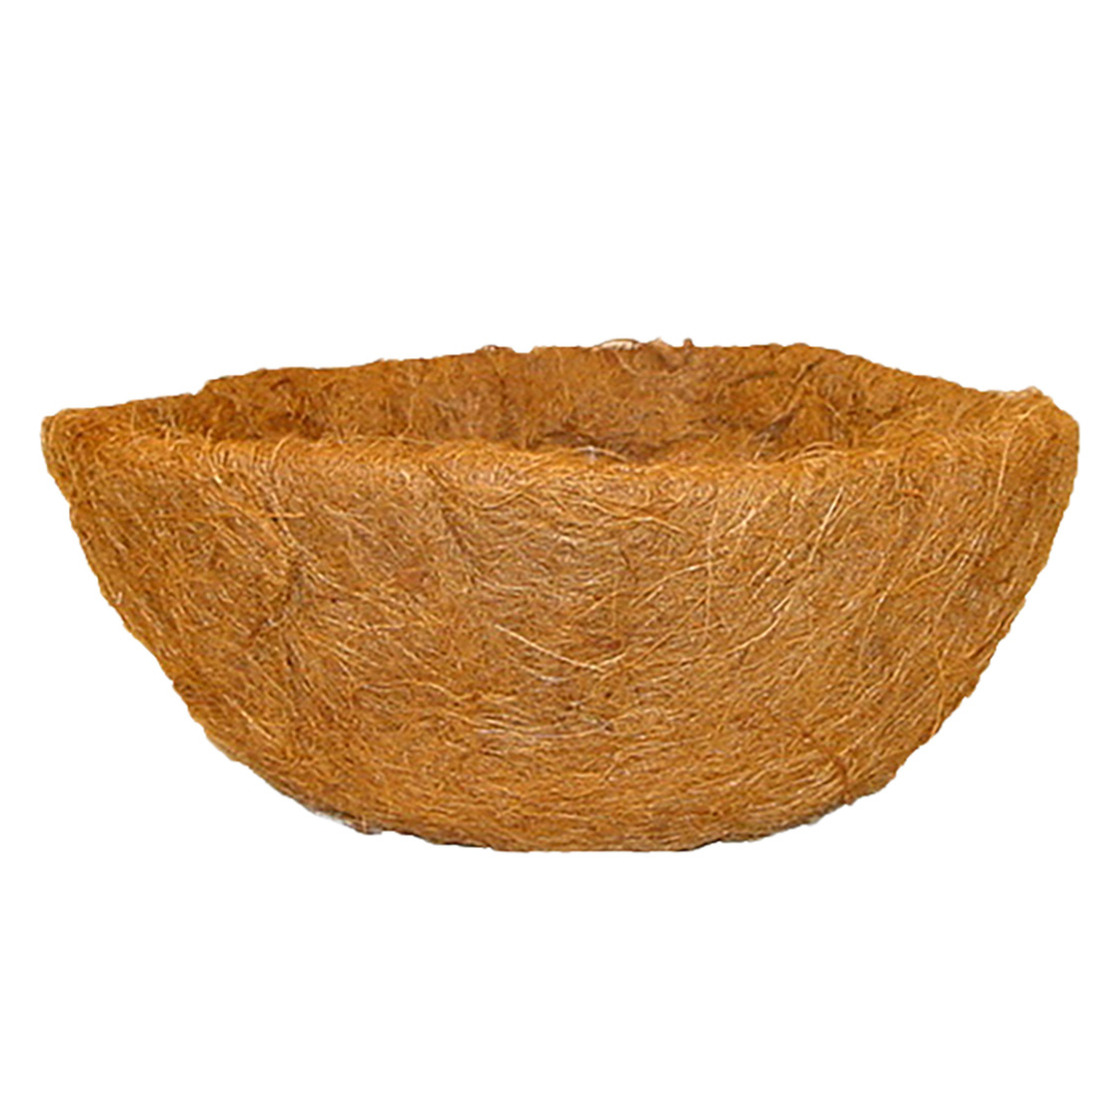 Voorgevormde inlegvel kokos voor hanging basket 40 cm kokosinleggers rond